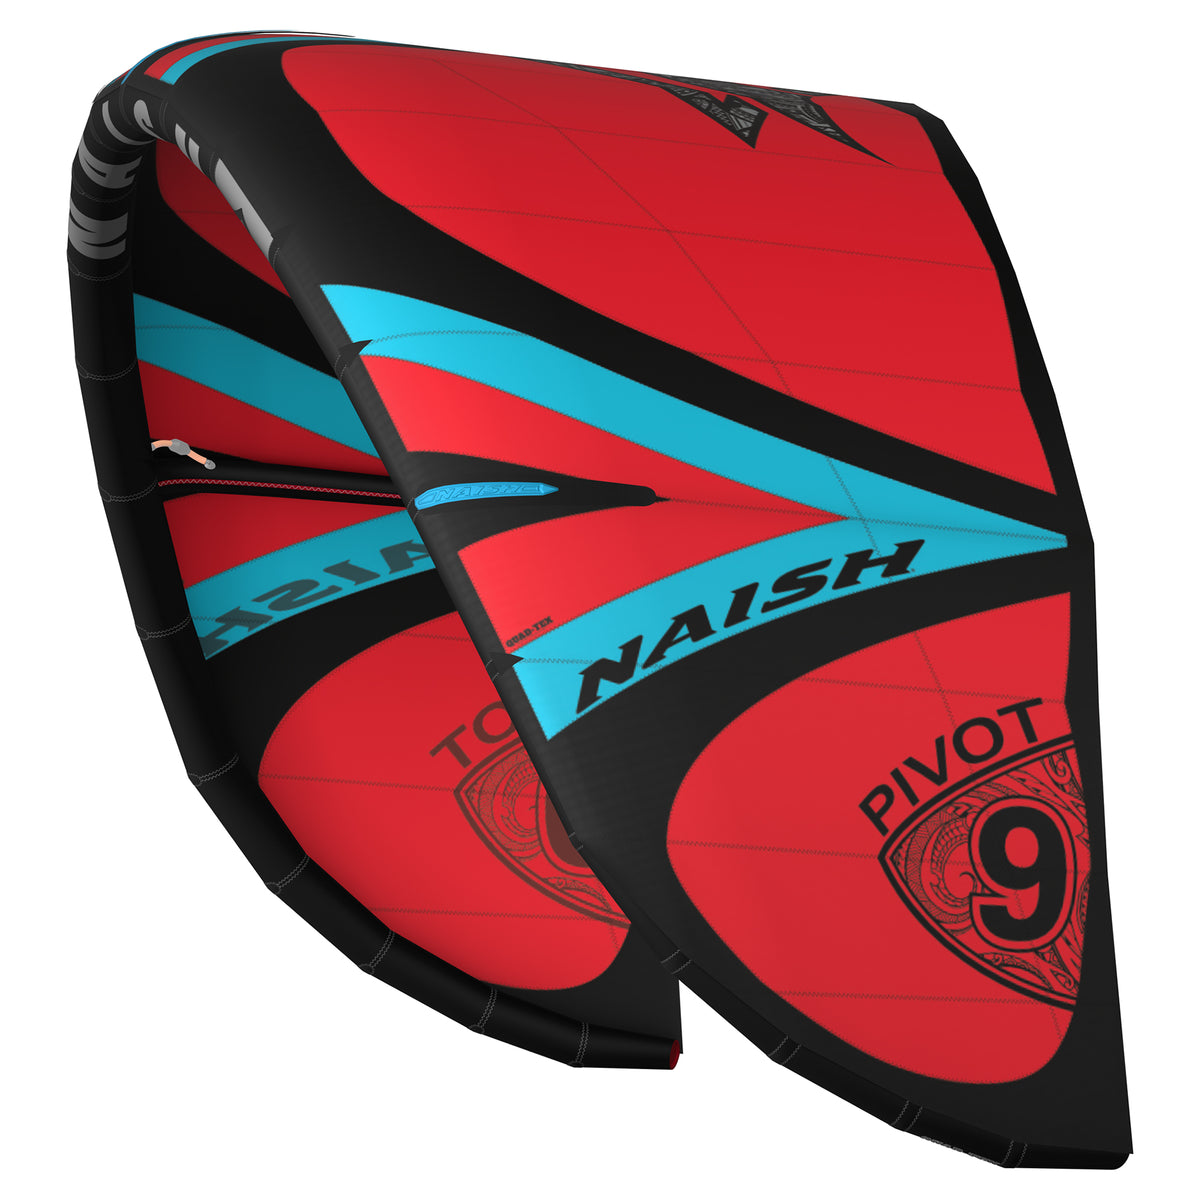 Vela per kitesurf Naish Pivot S27 rosso Kitepoint.shop Malcesine